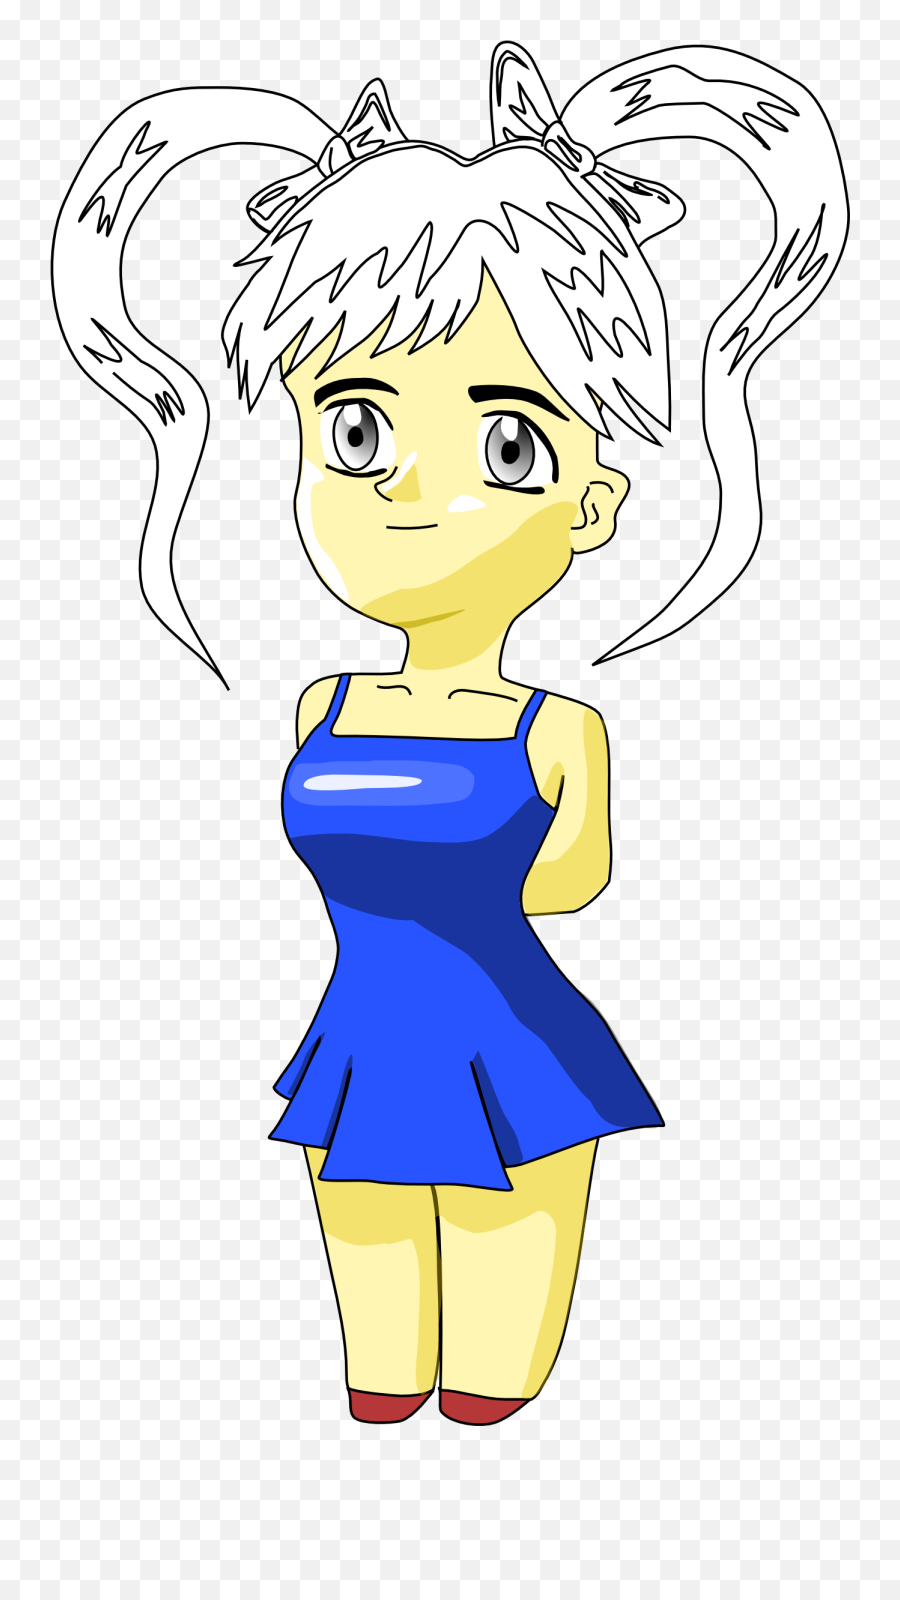 Cartoon Blonde Girl Drawing Free Image - Pesonaje Chibi Emoji,Face Cartoon Blonde Female Emojis